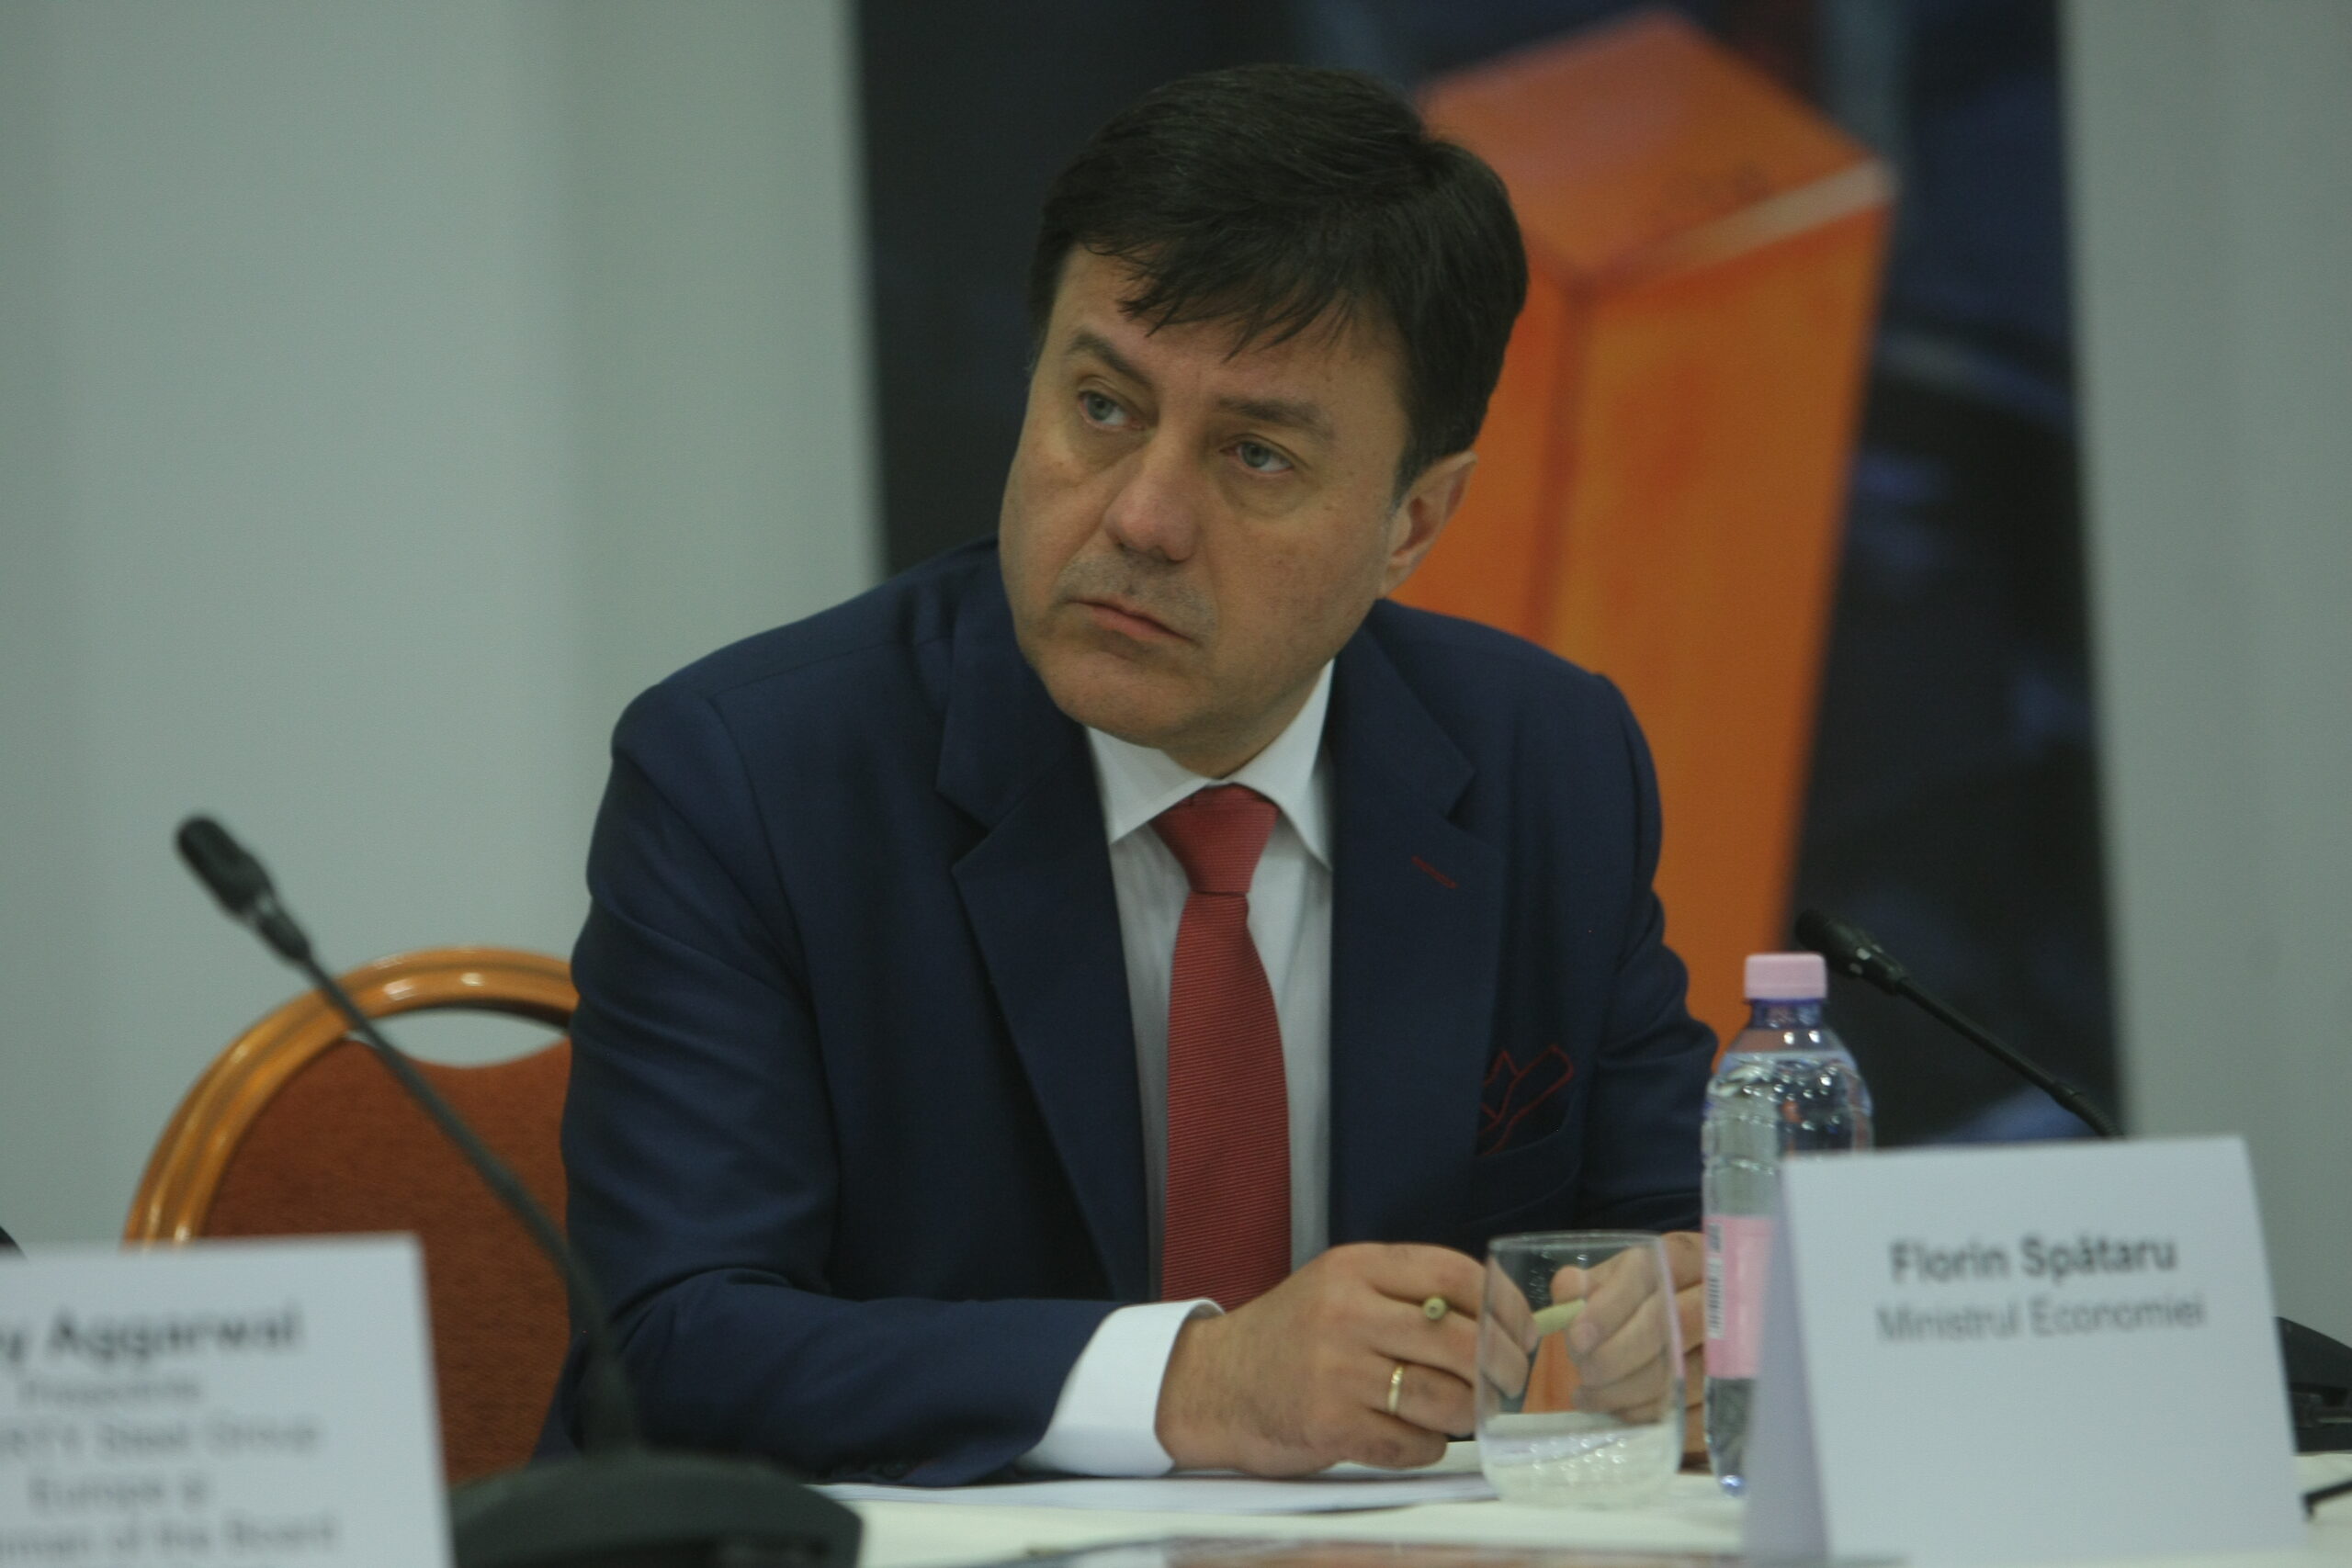 Florin Spătaru, ministrul Economiei: ”România va avea o strategie pe hidrogen”. Care este viitorul oțelului verde pe plan local